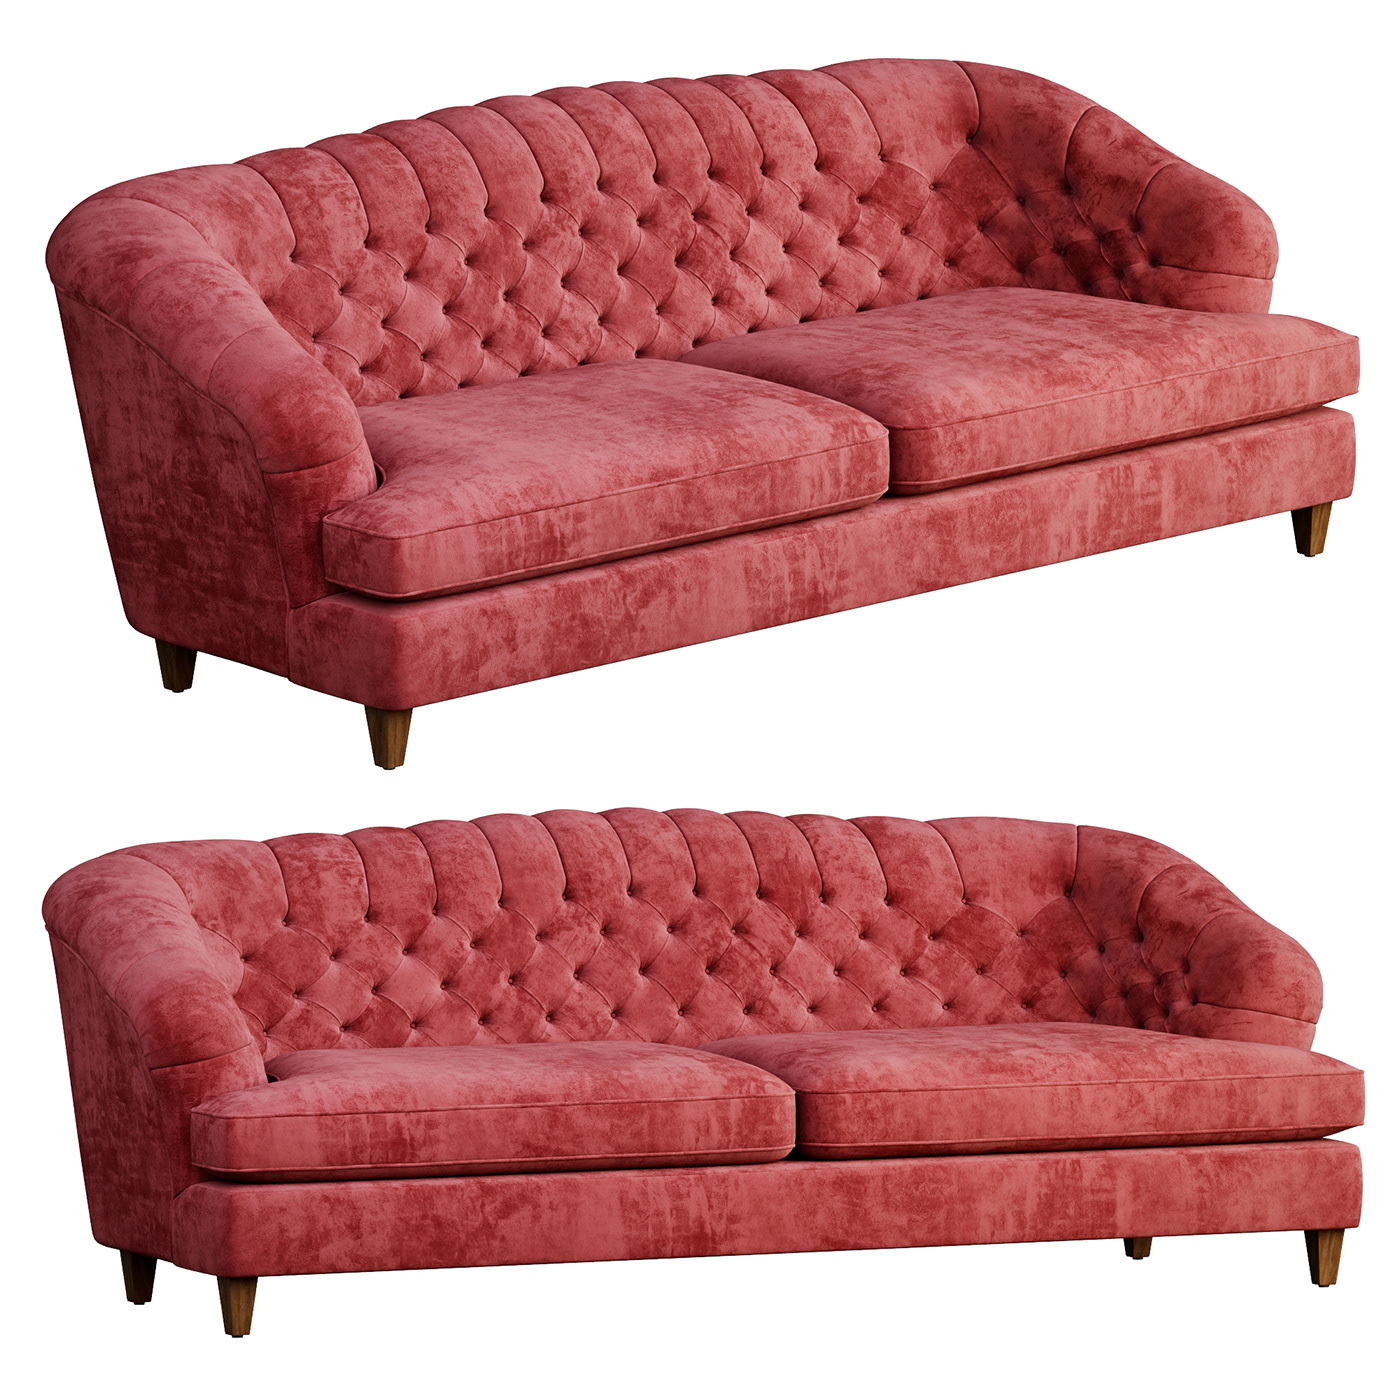 3D Classic furniture maeve Render sofa